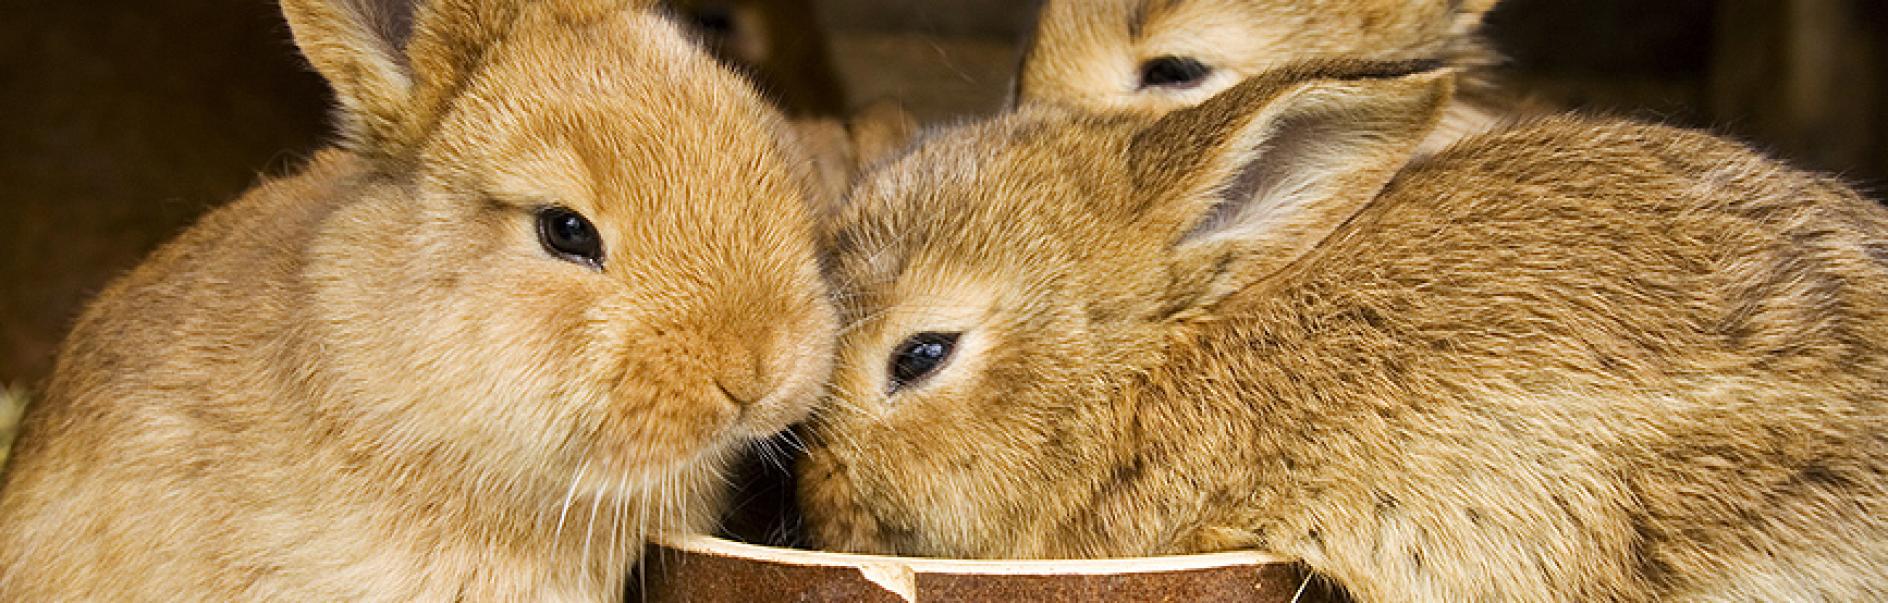 trois lapins qui mangent dans la même gamelle